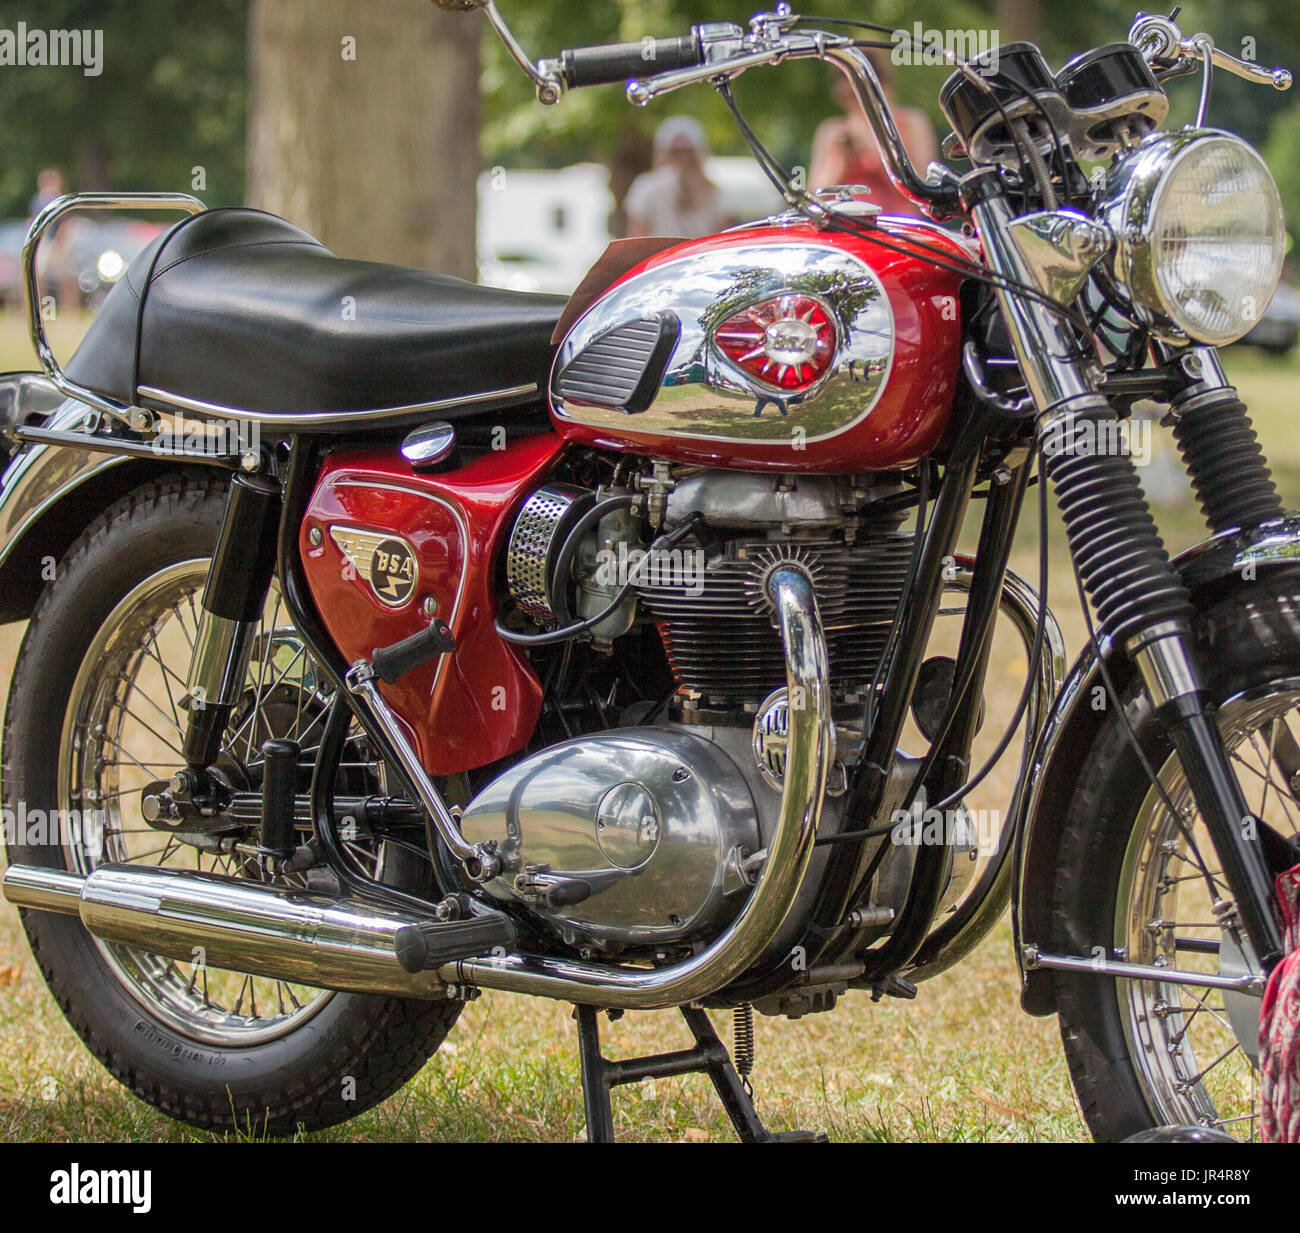 Old bsa motorcycle immagini e fotografie stock ad alta risoluzione - Alamy